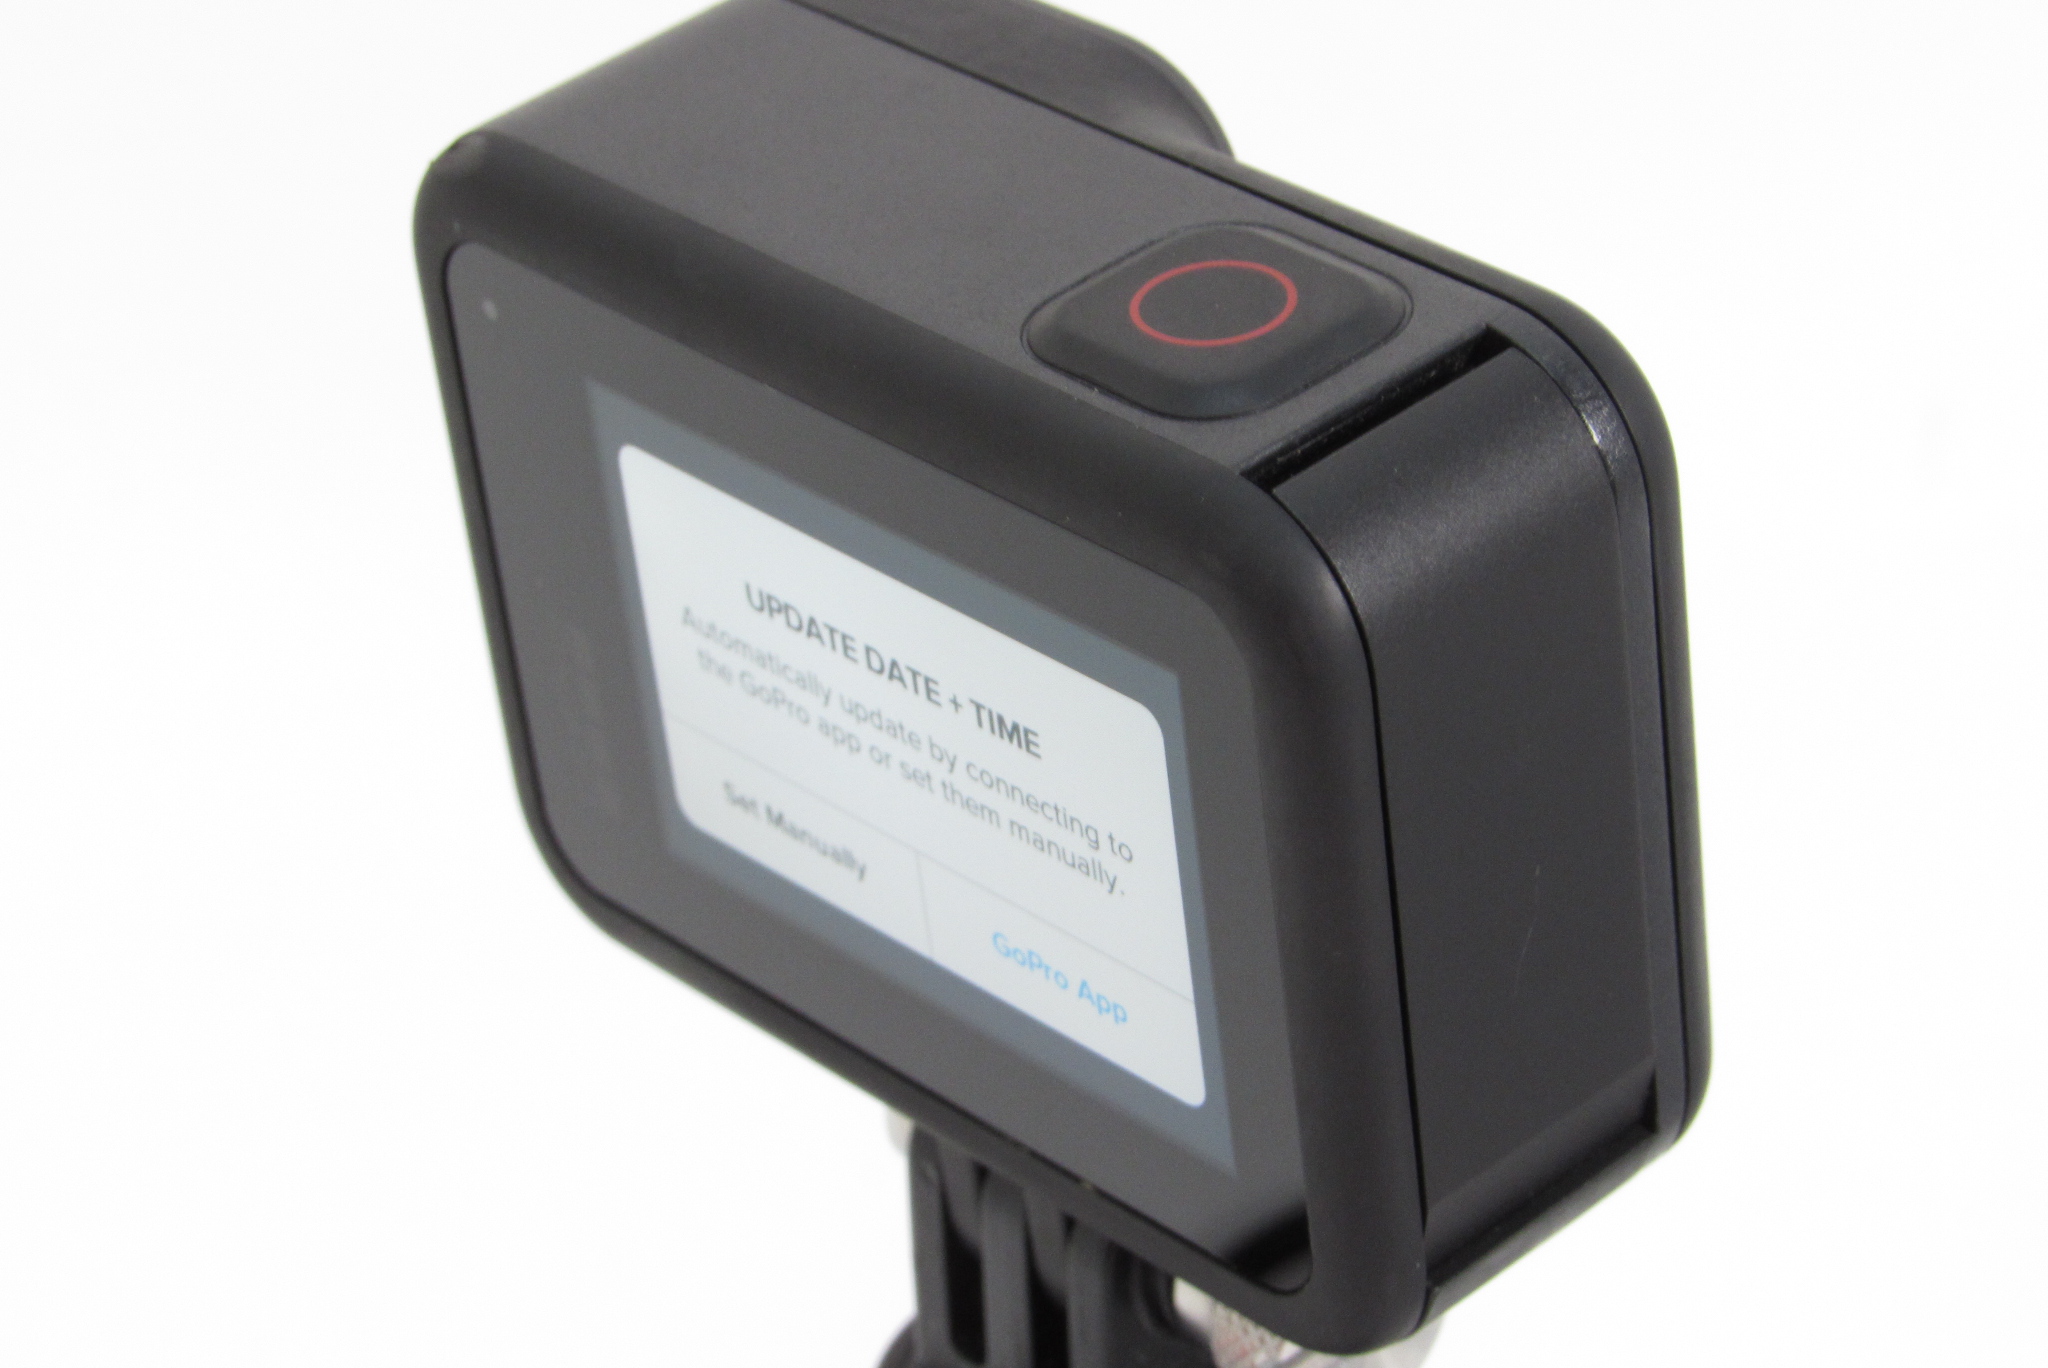 GoPro HERO8 Black (SPJB1) 4K UHD 12MP Digital Action Camera